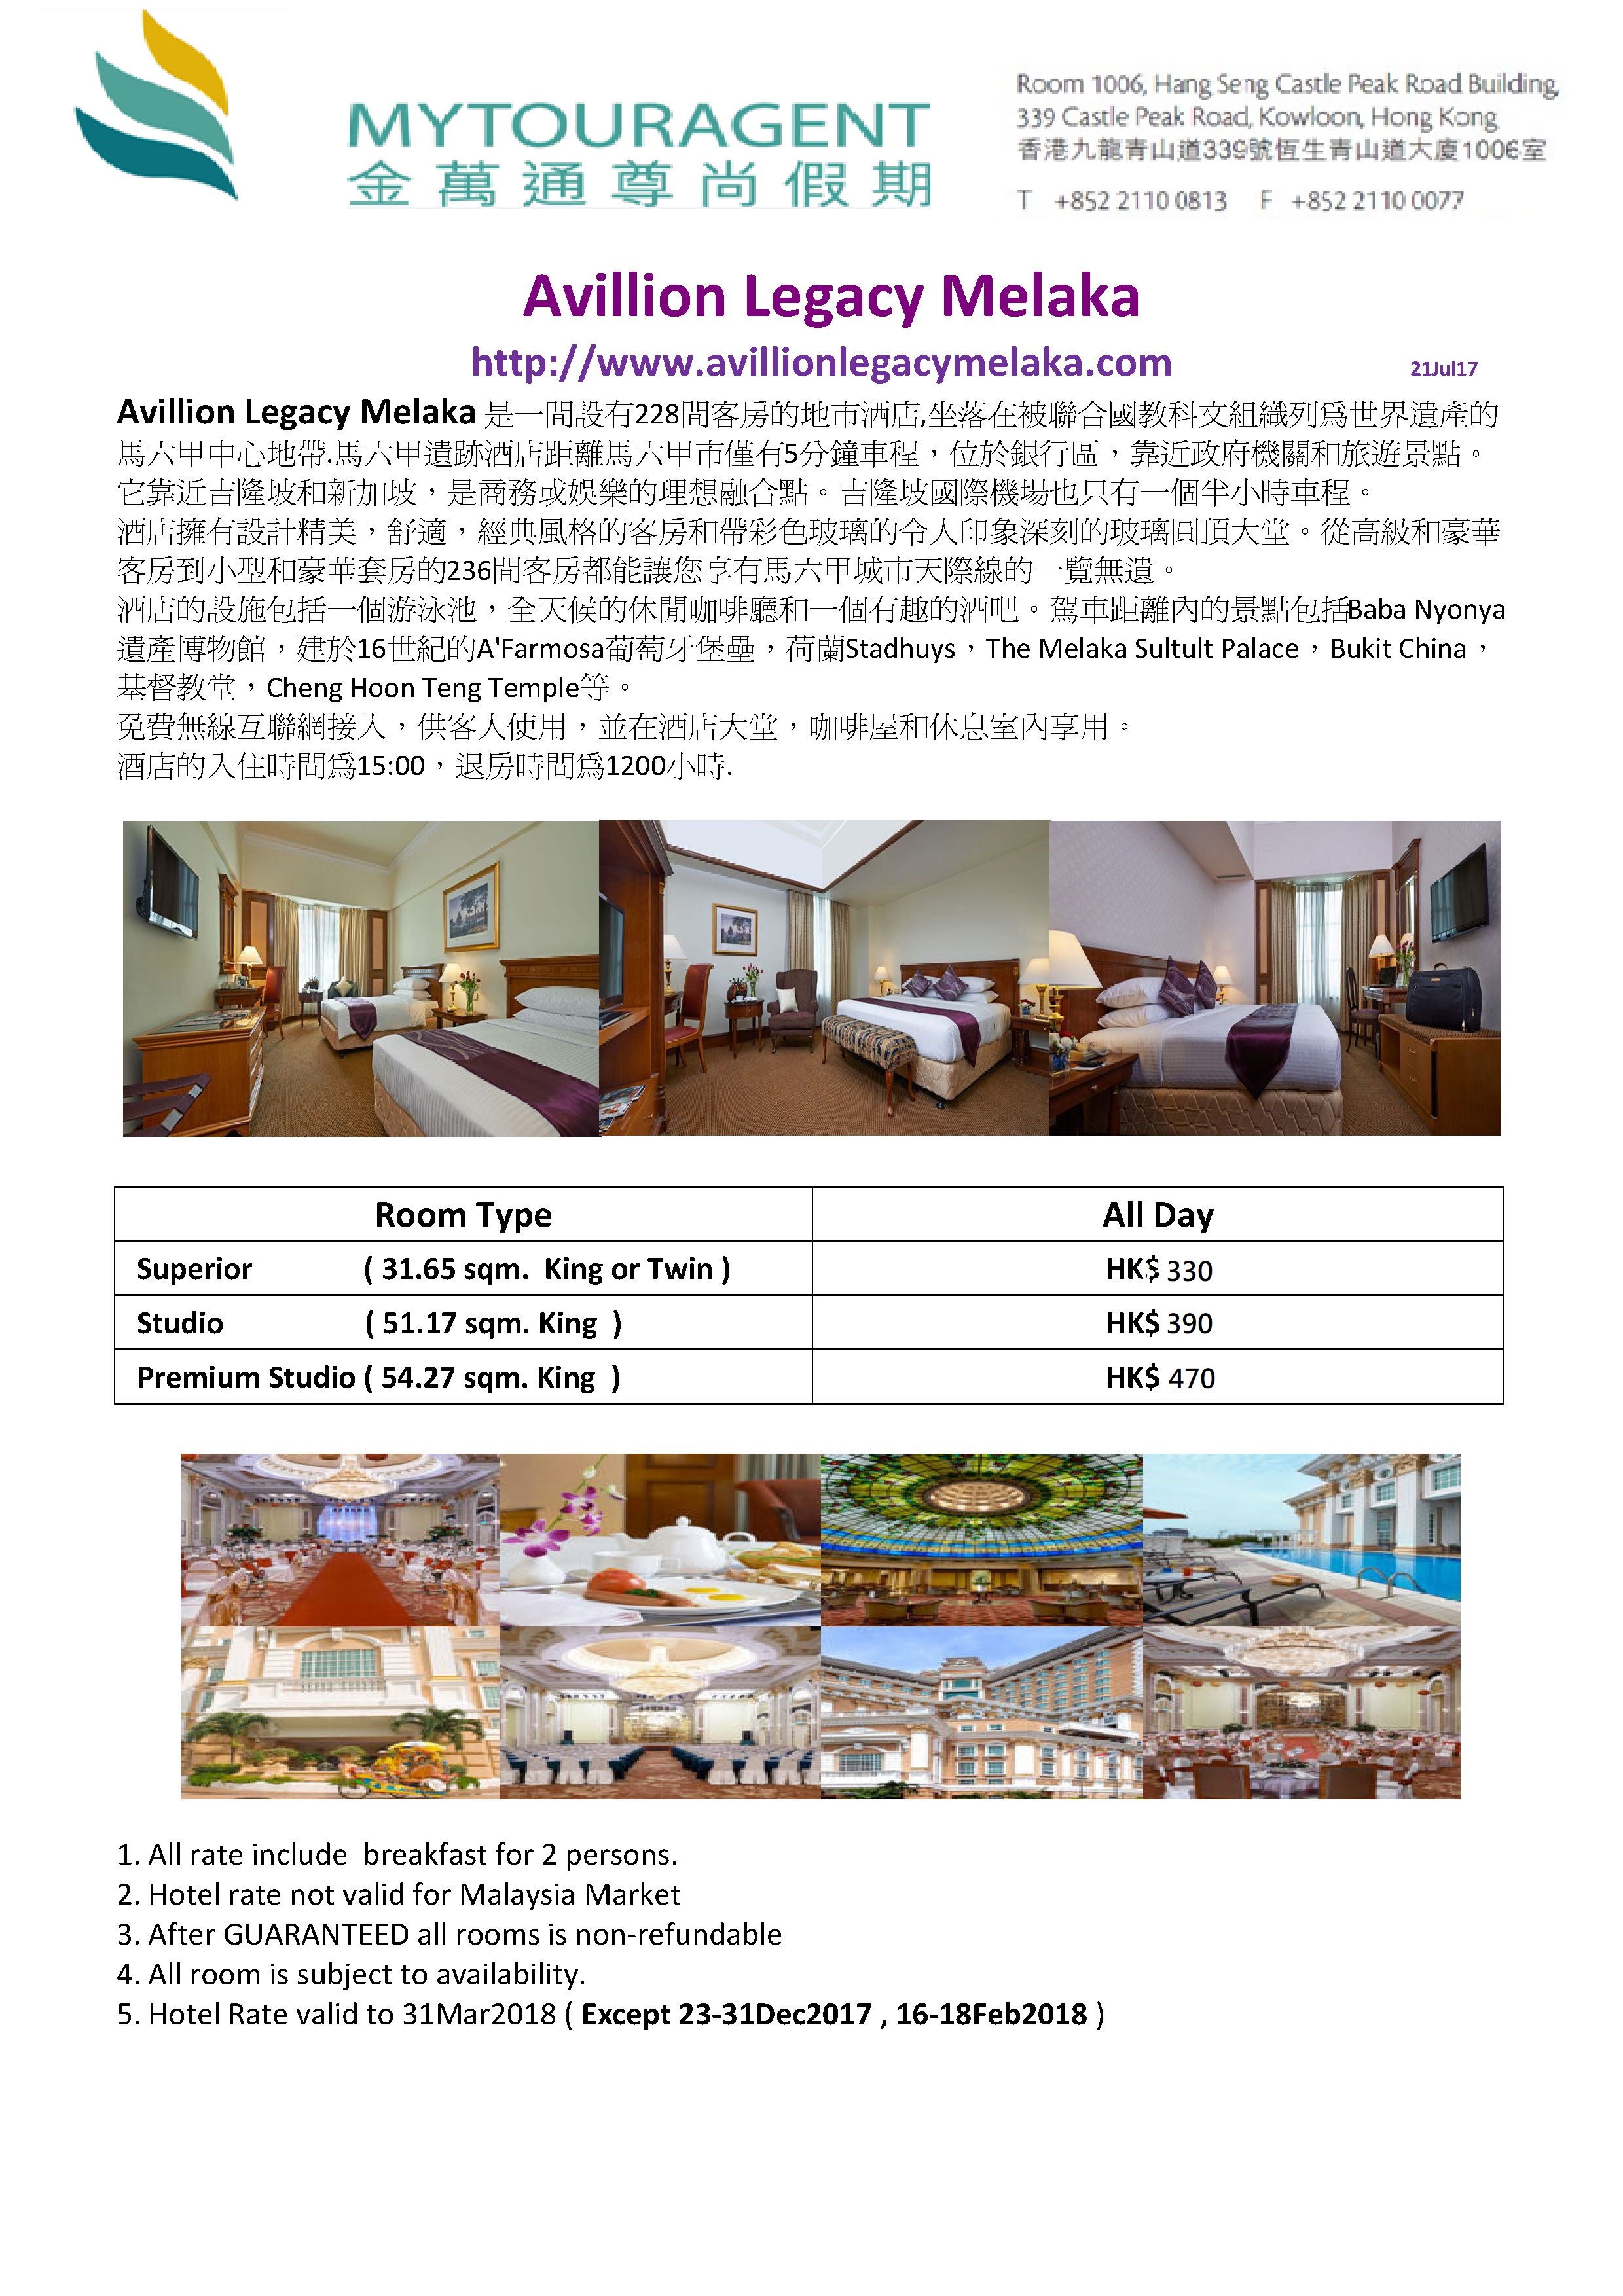 Avillion Legacy Melaka Hotel Flyer